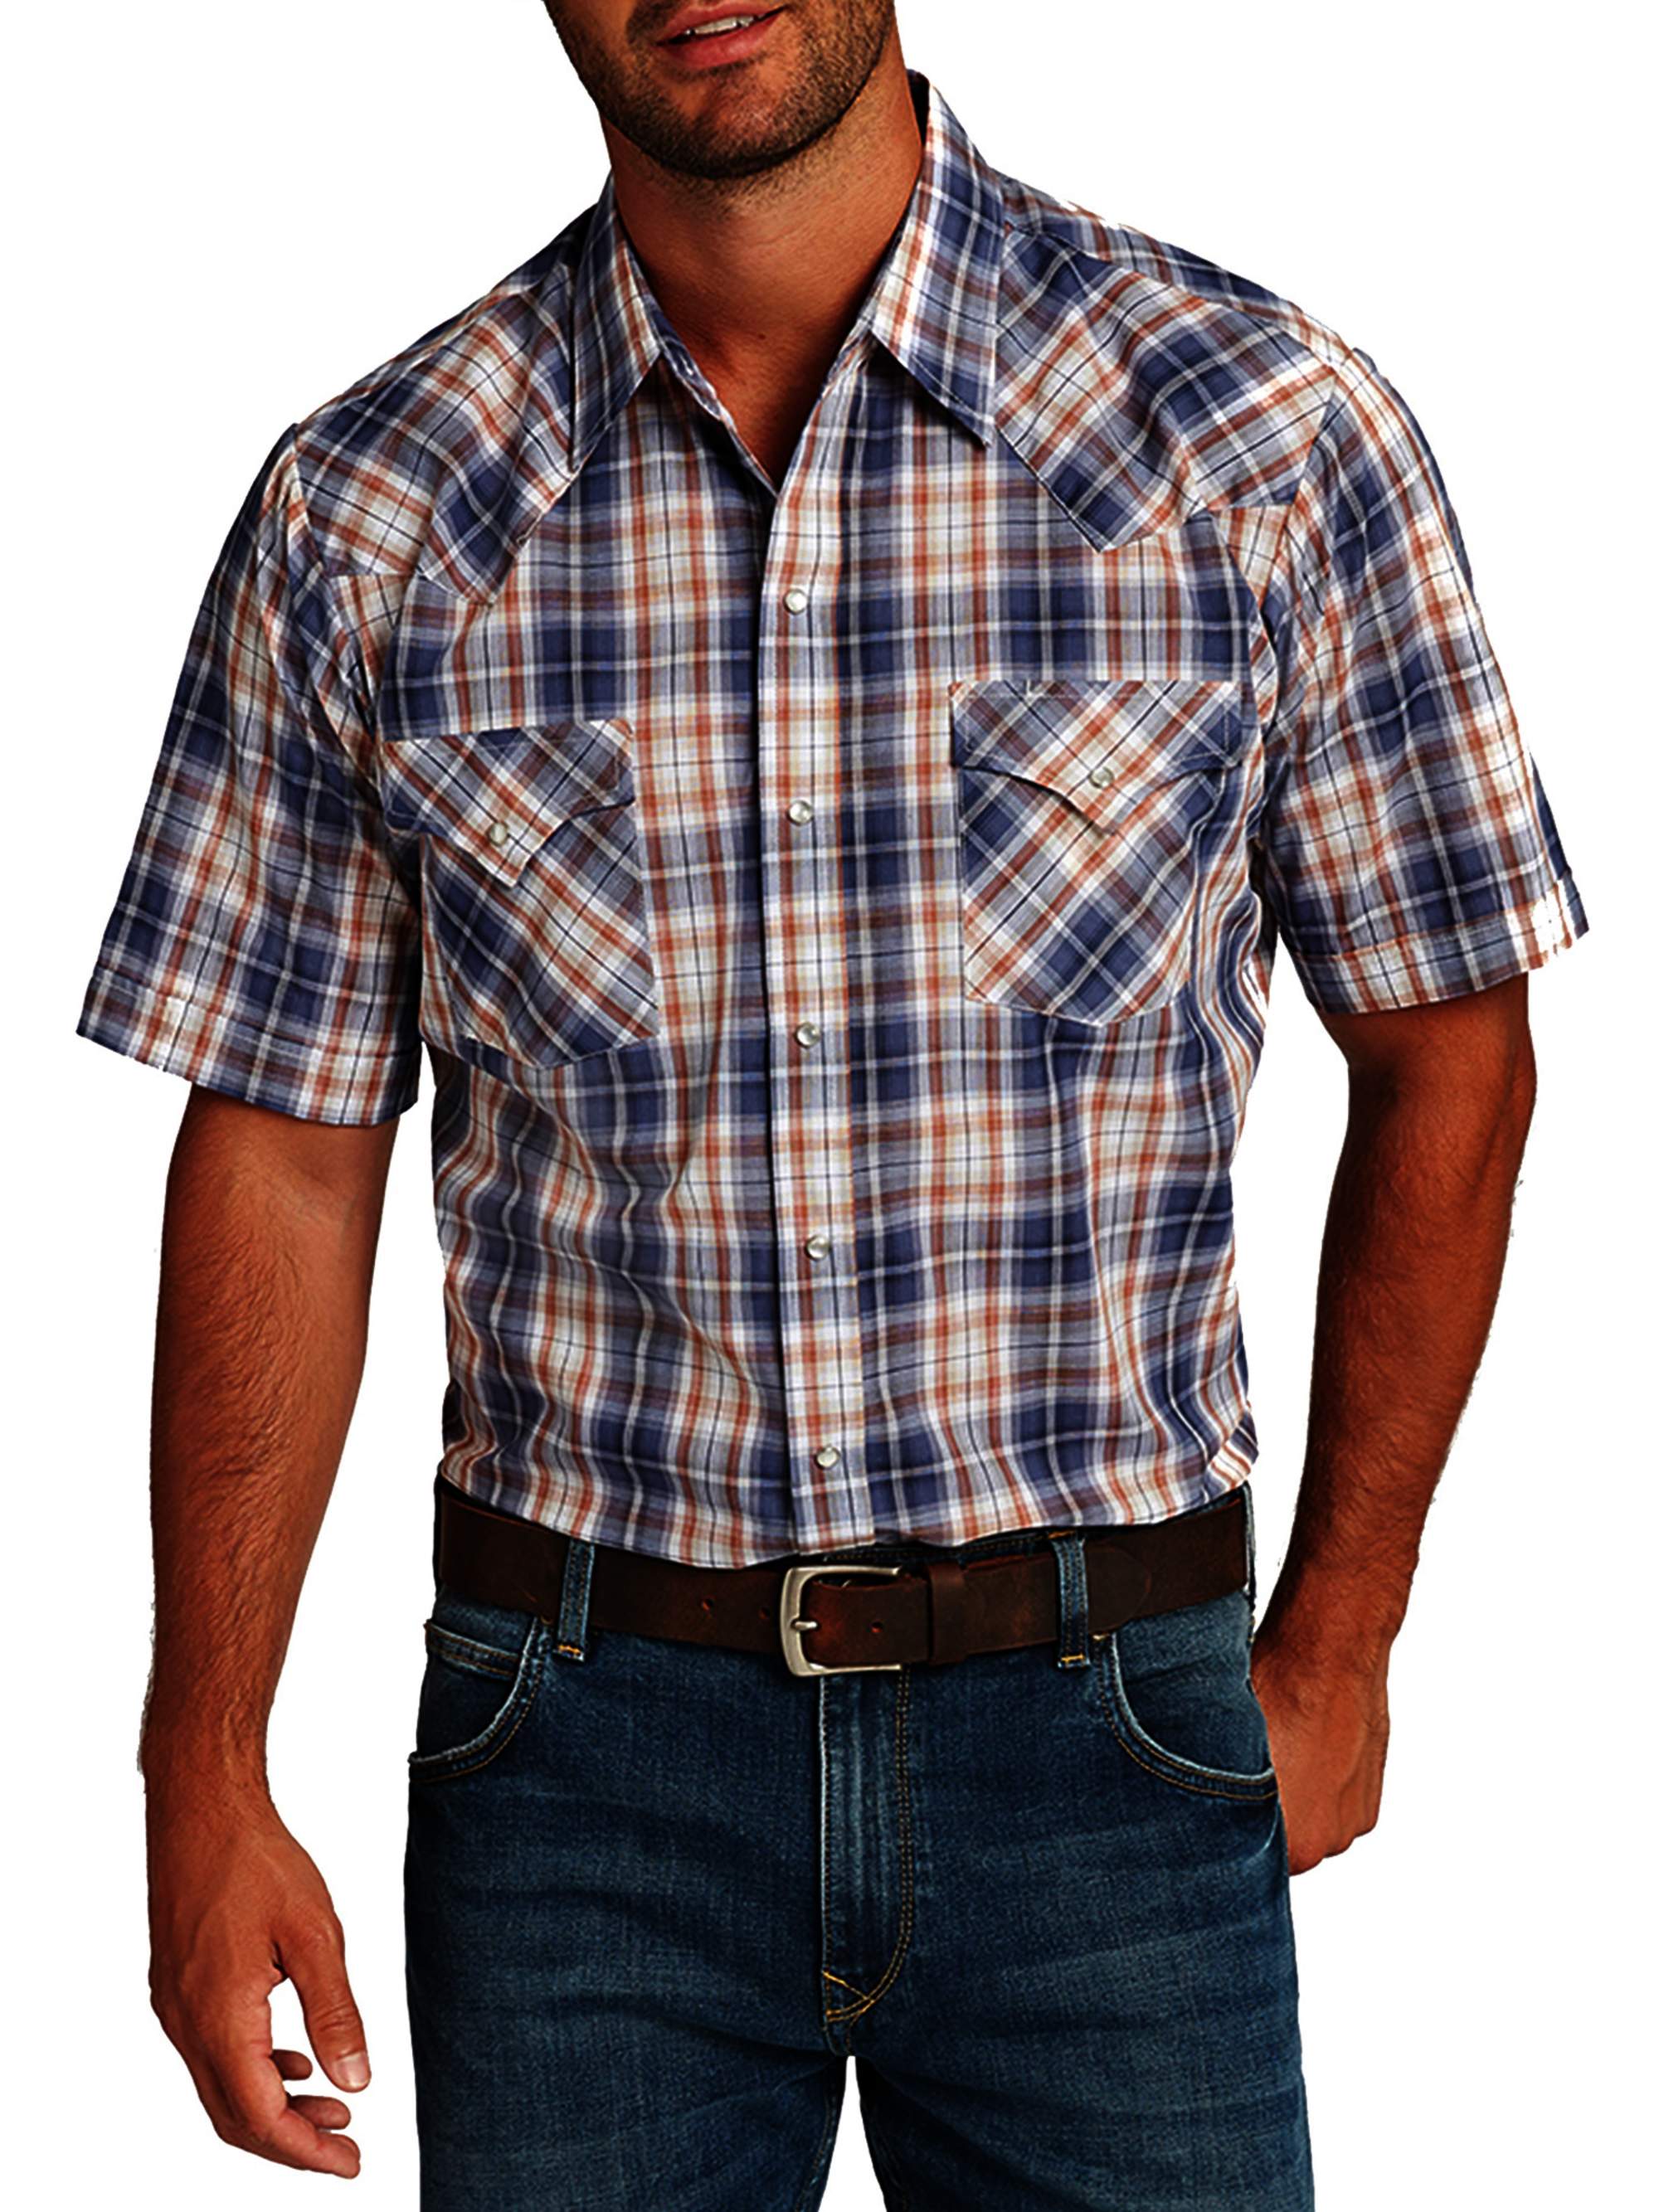 Ely Cattleman Men's Short Sleeve Plaid Western Shirt - Walmart.com ...